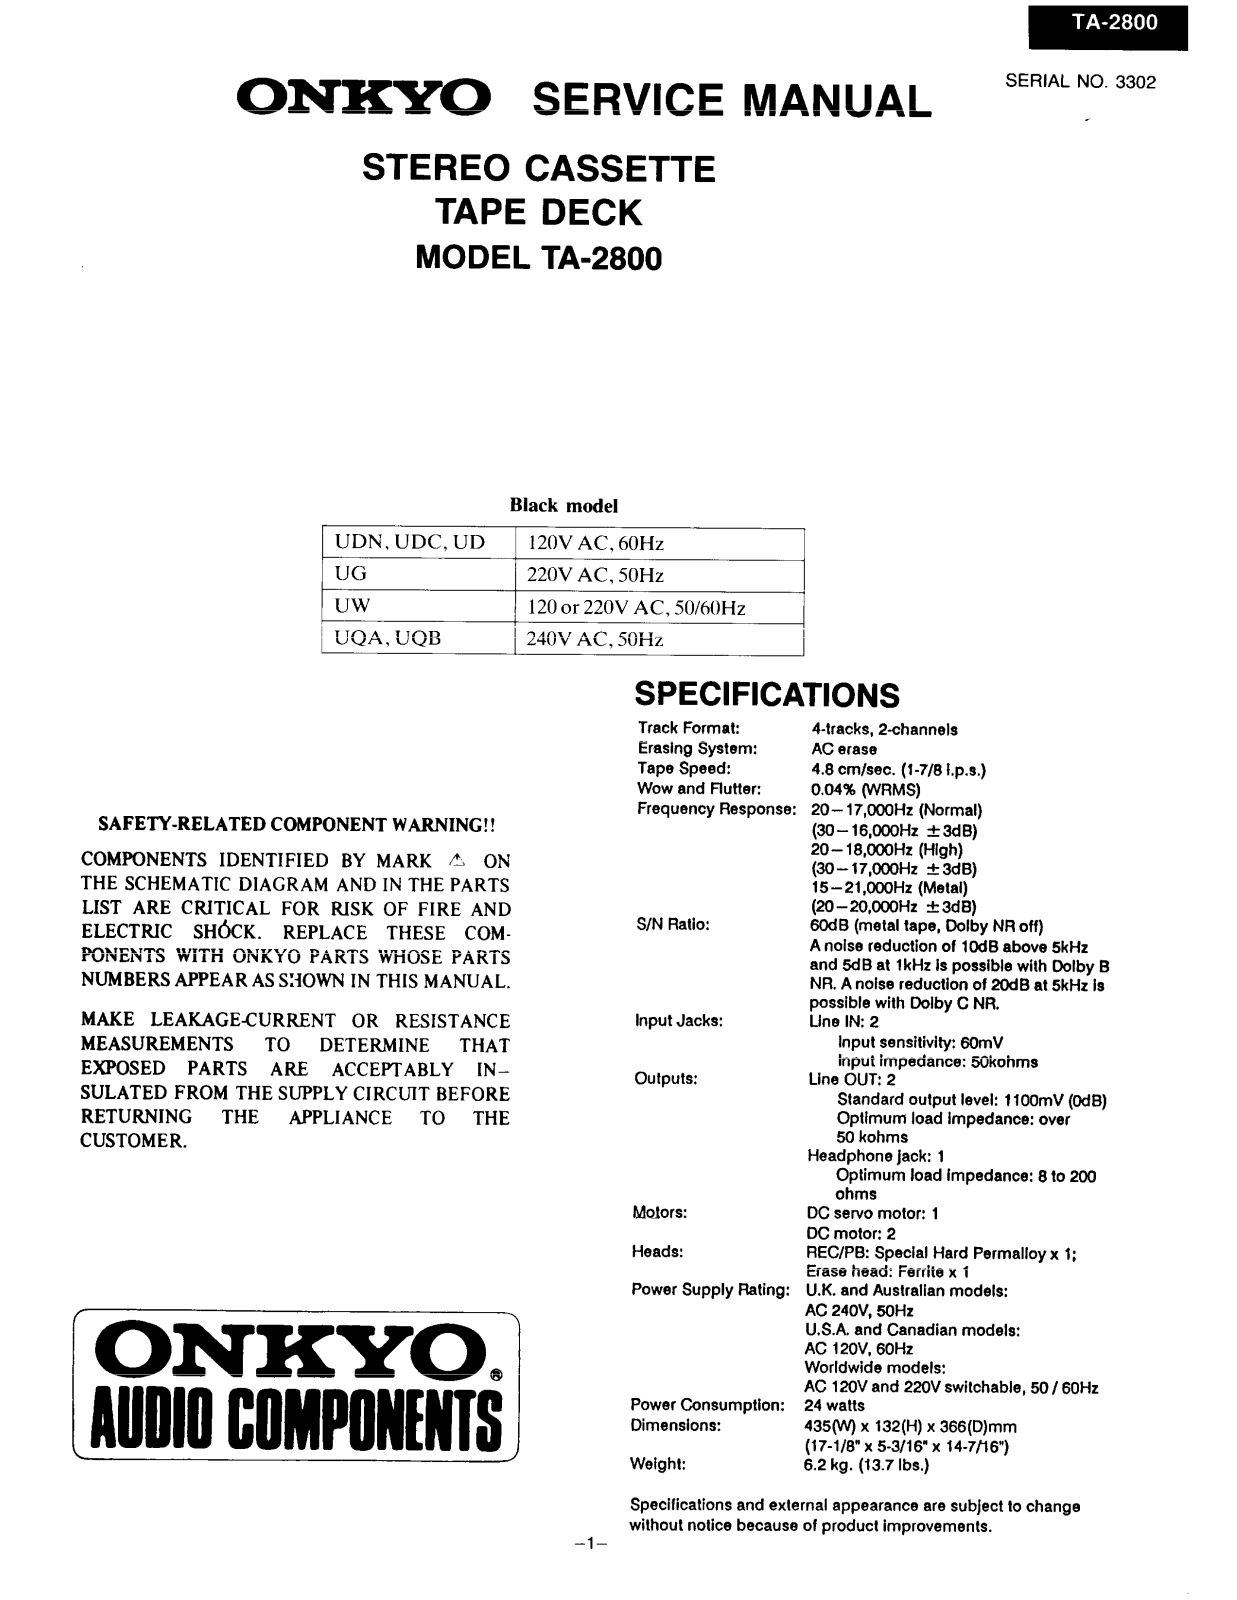 Onkyo TA-2800 Service manual